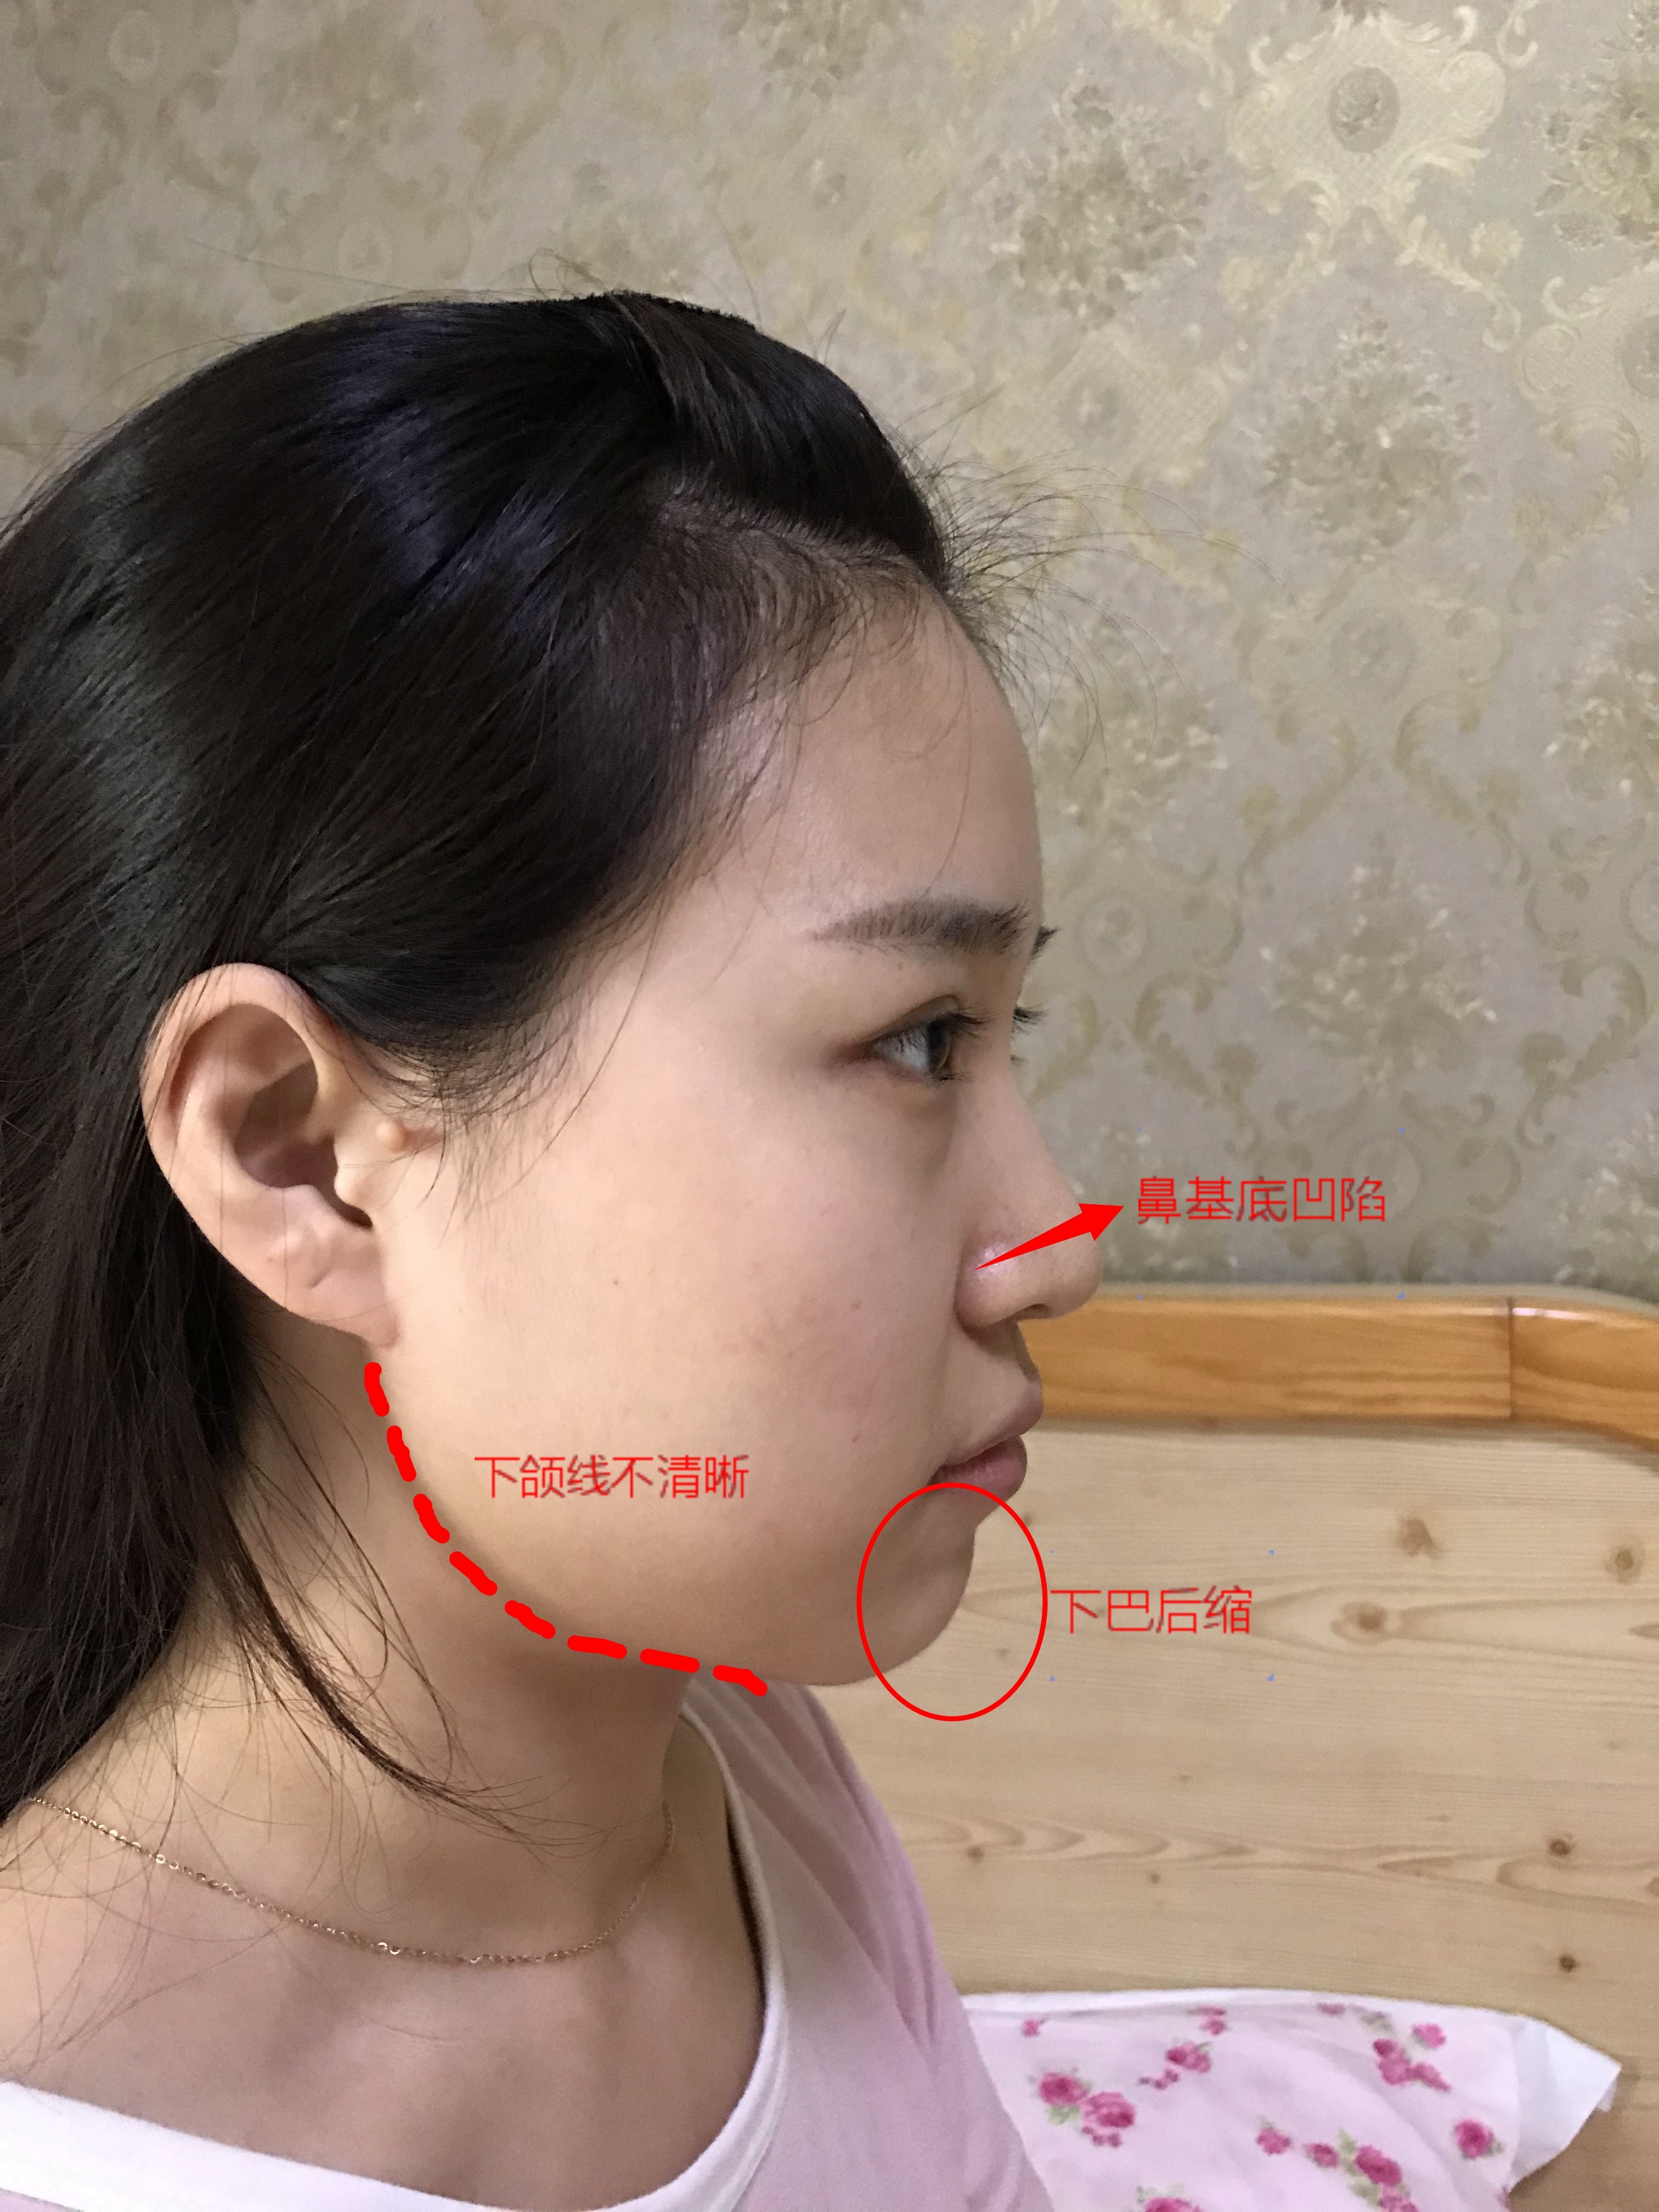 张侧面图来看,你的脸部主要有以下几个问题: ①鼻基底凹陷 ②下巴后缩